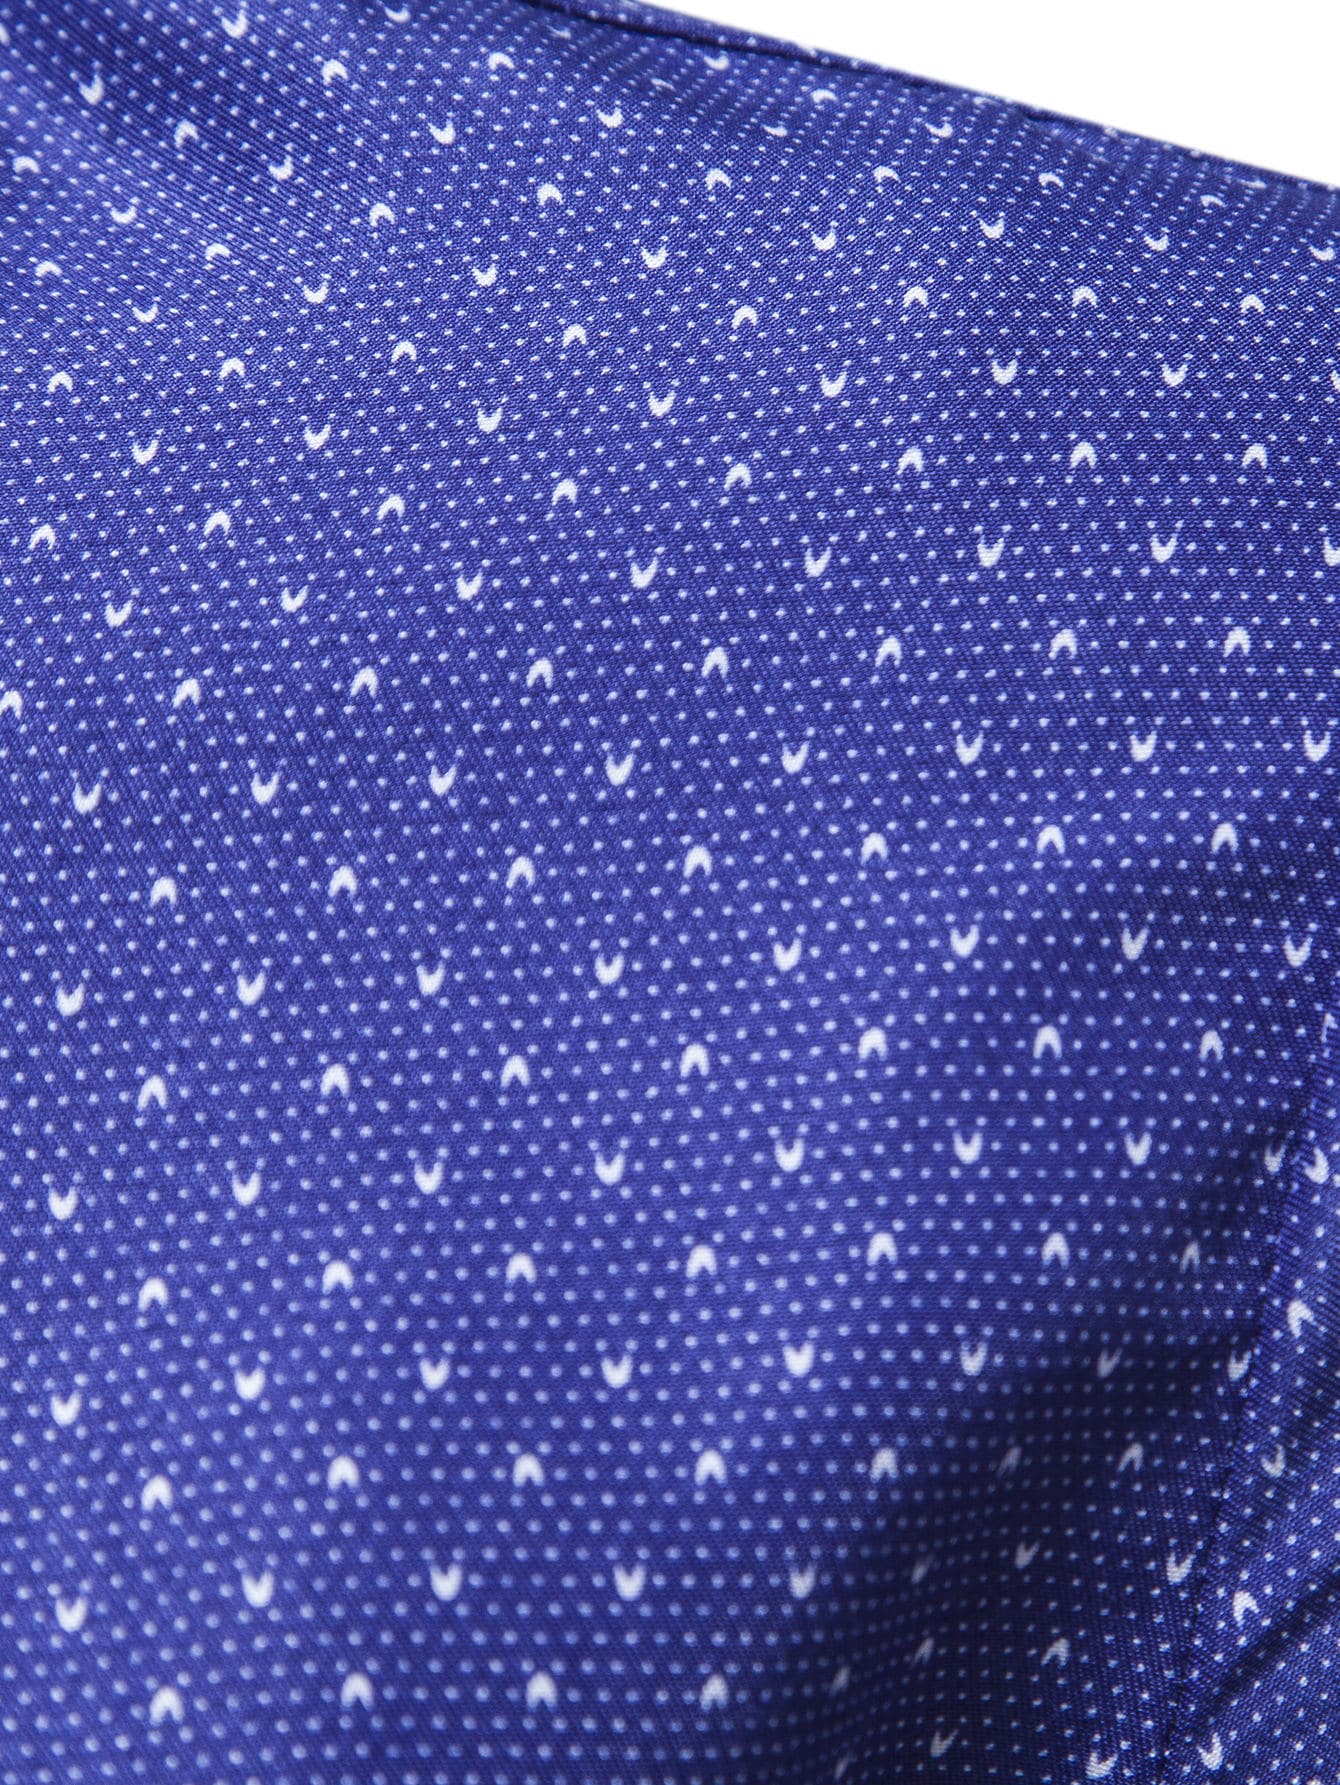 Manfinity Mode Men Allover Print Button Up Shirt